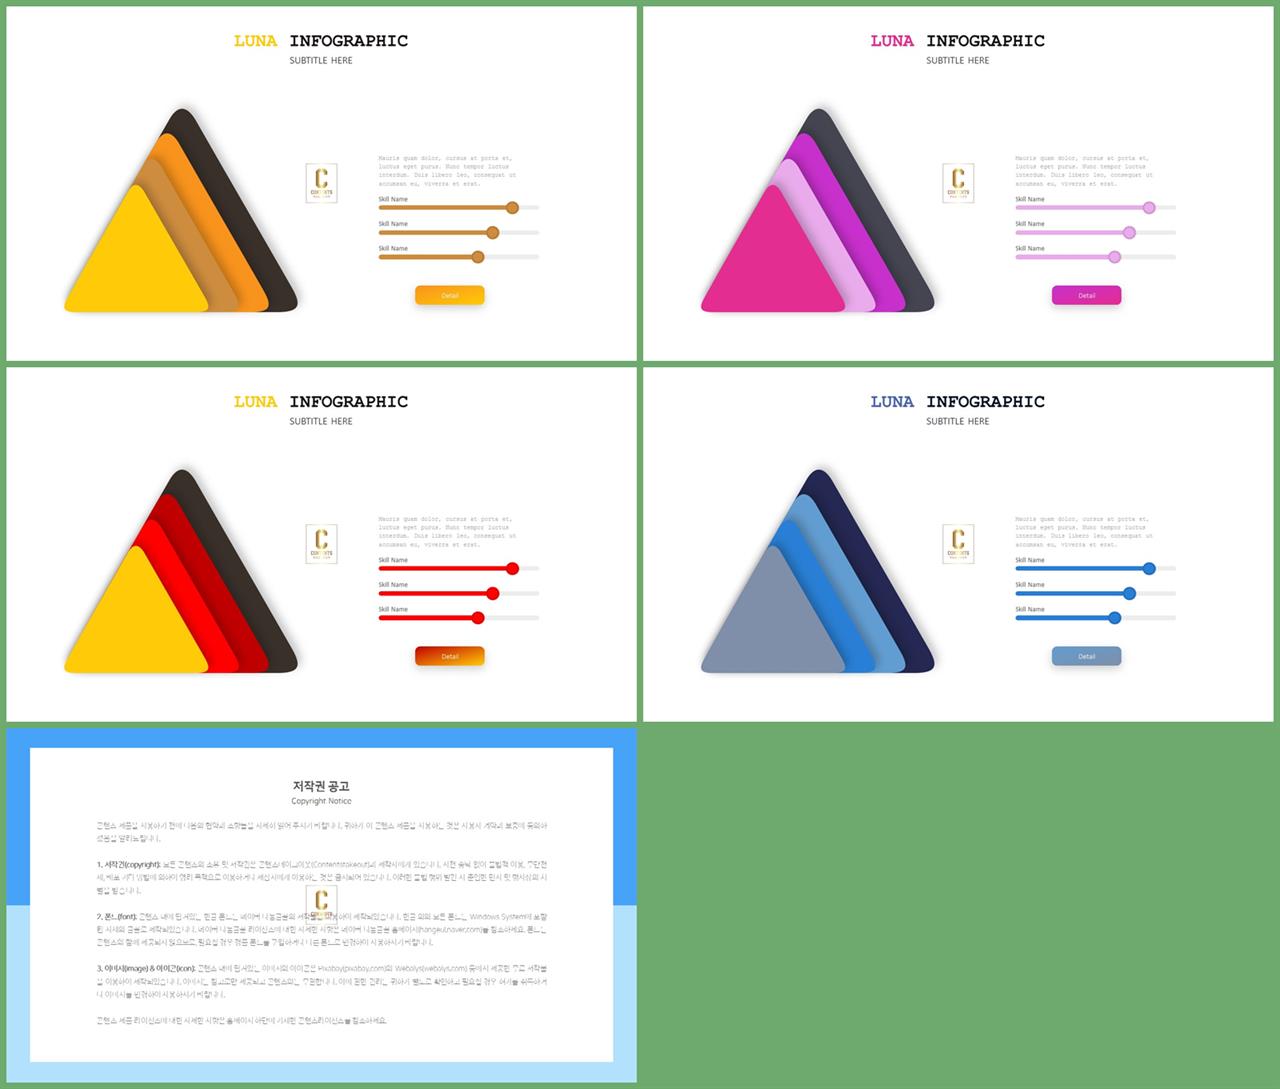 PPT다이어그램 피라미드형  고퀄리티 파워포인트양식 다운 상세보기